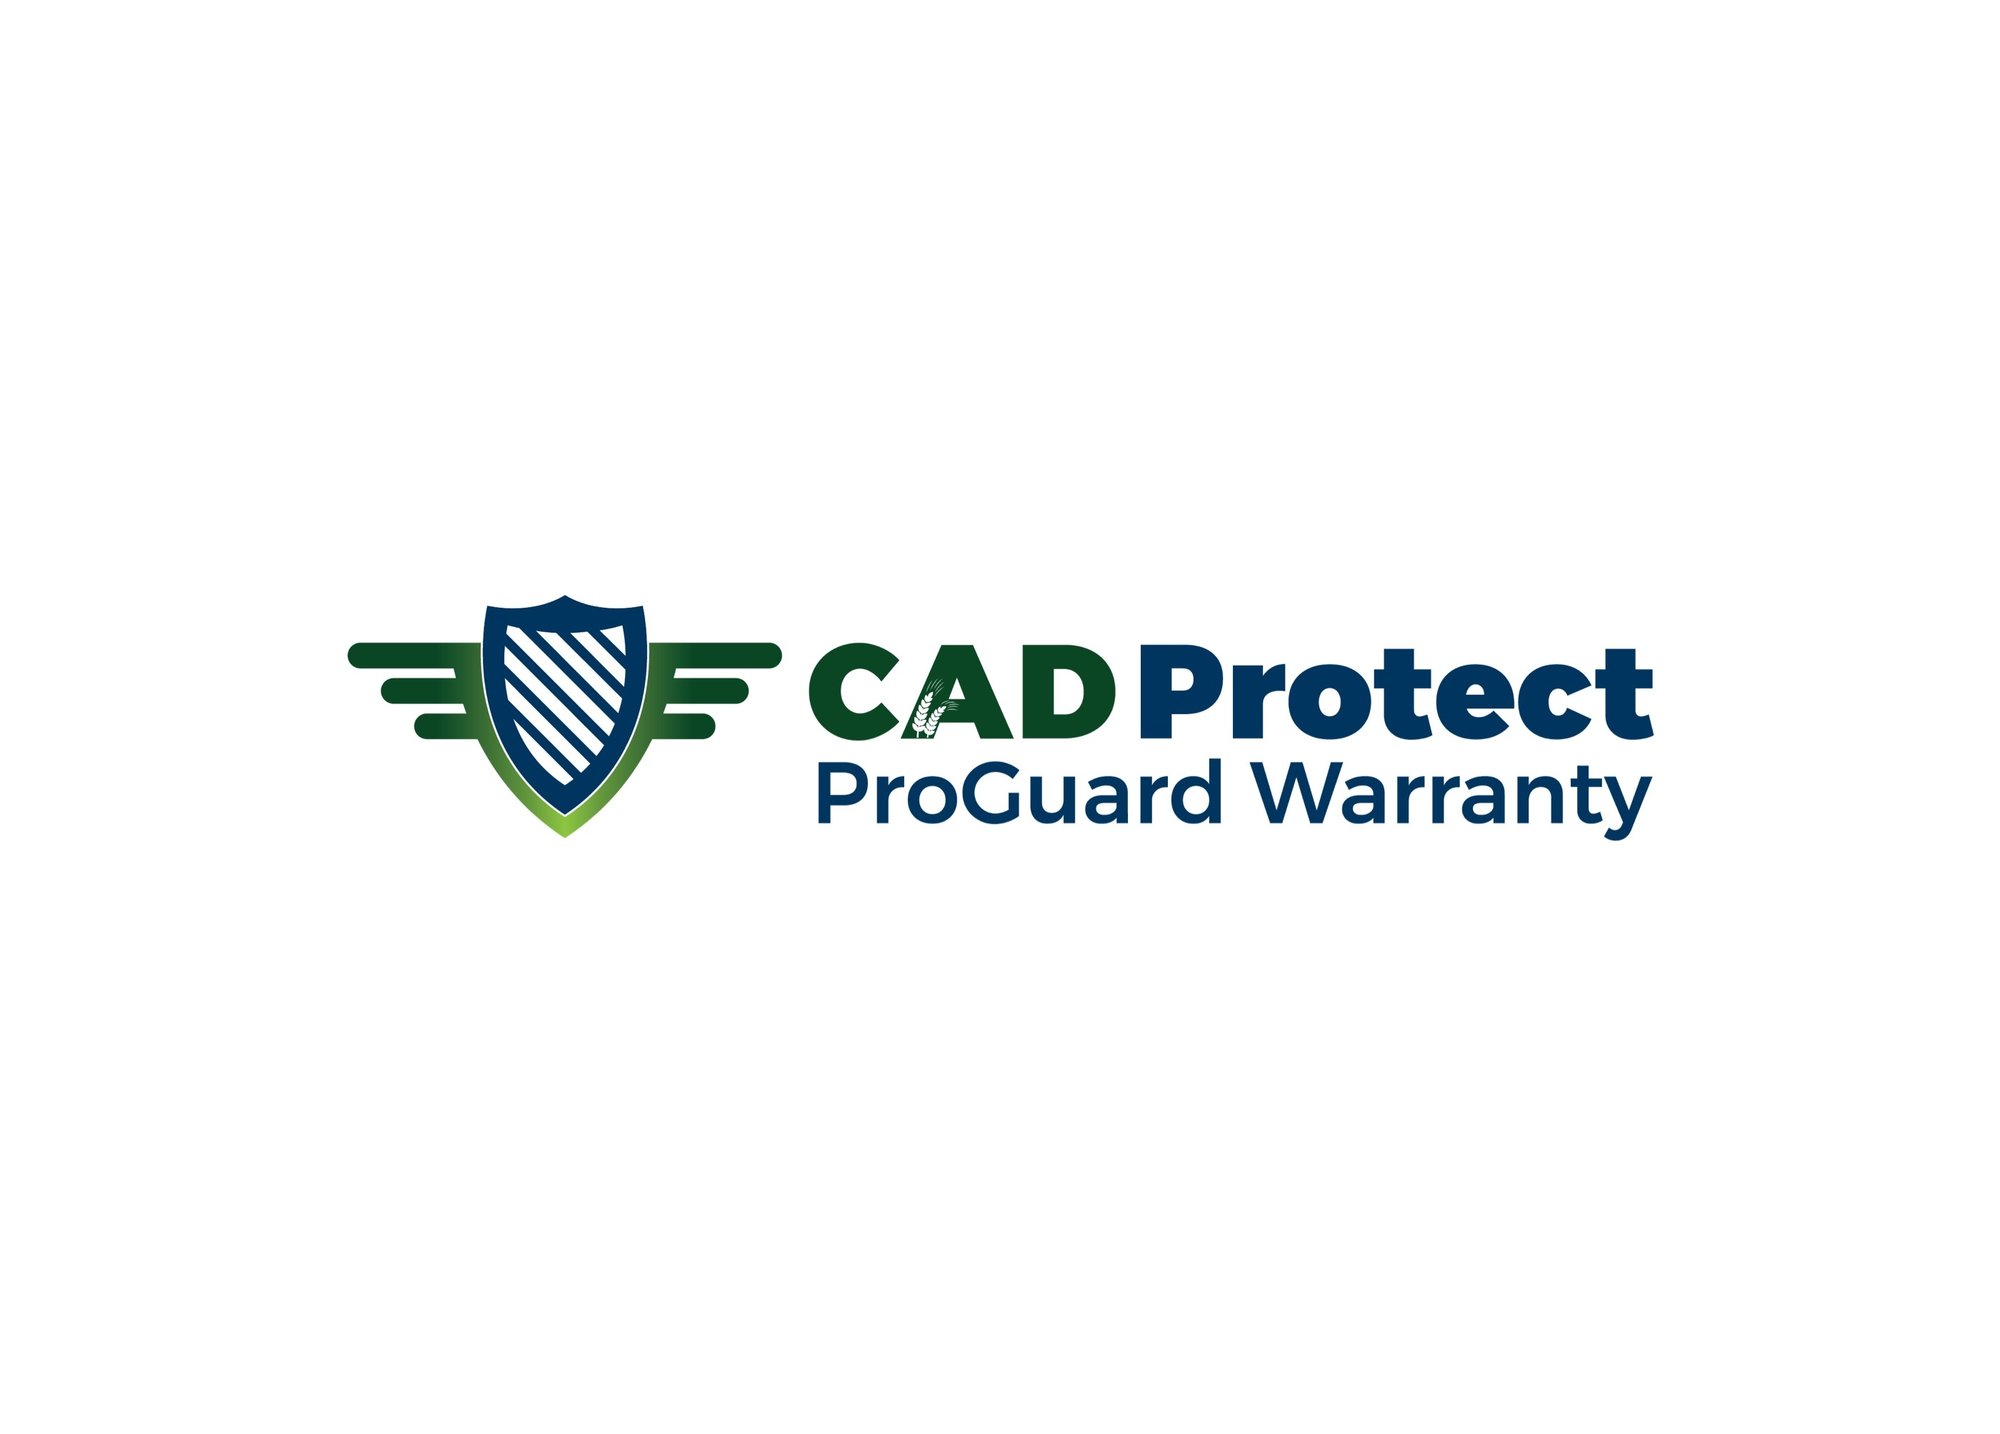 cad-protect-logo-bg